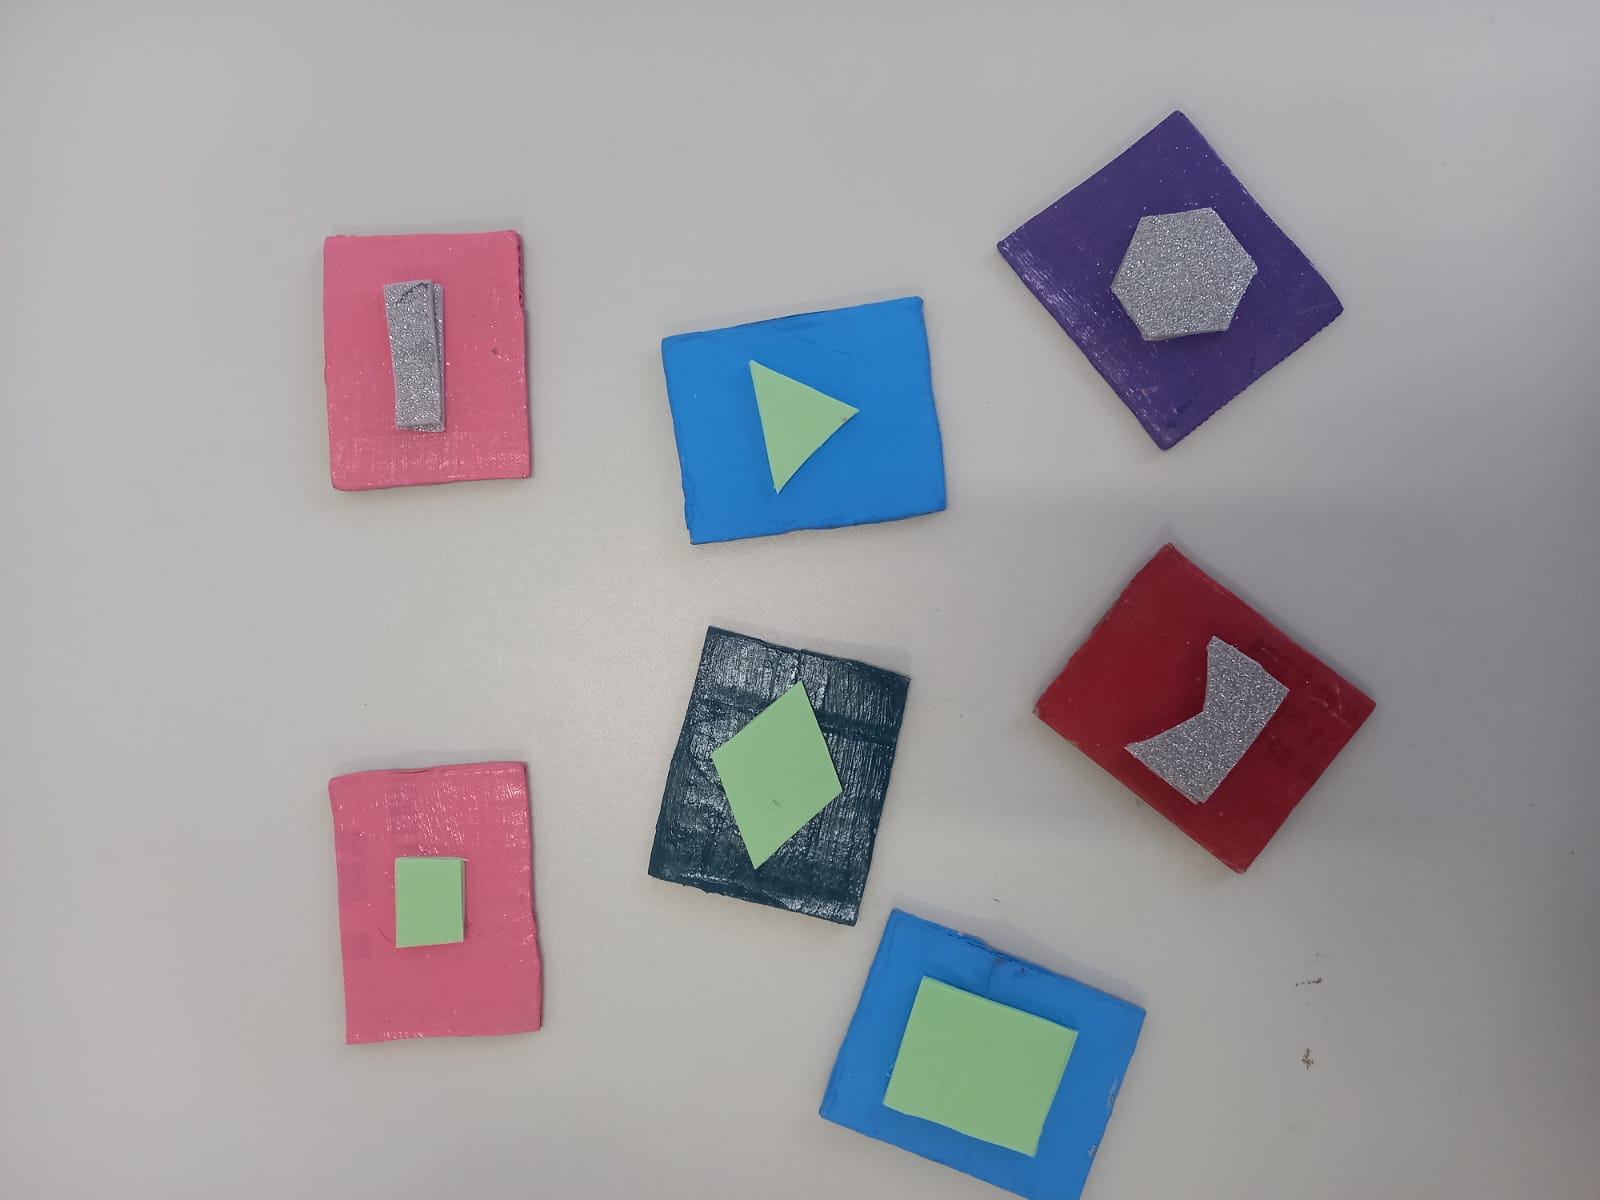 7 figuras quadradas com diferentes formas geométricas no centro